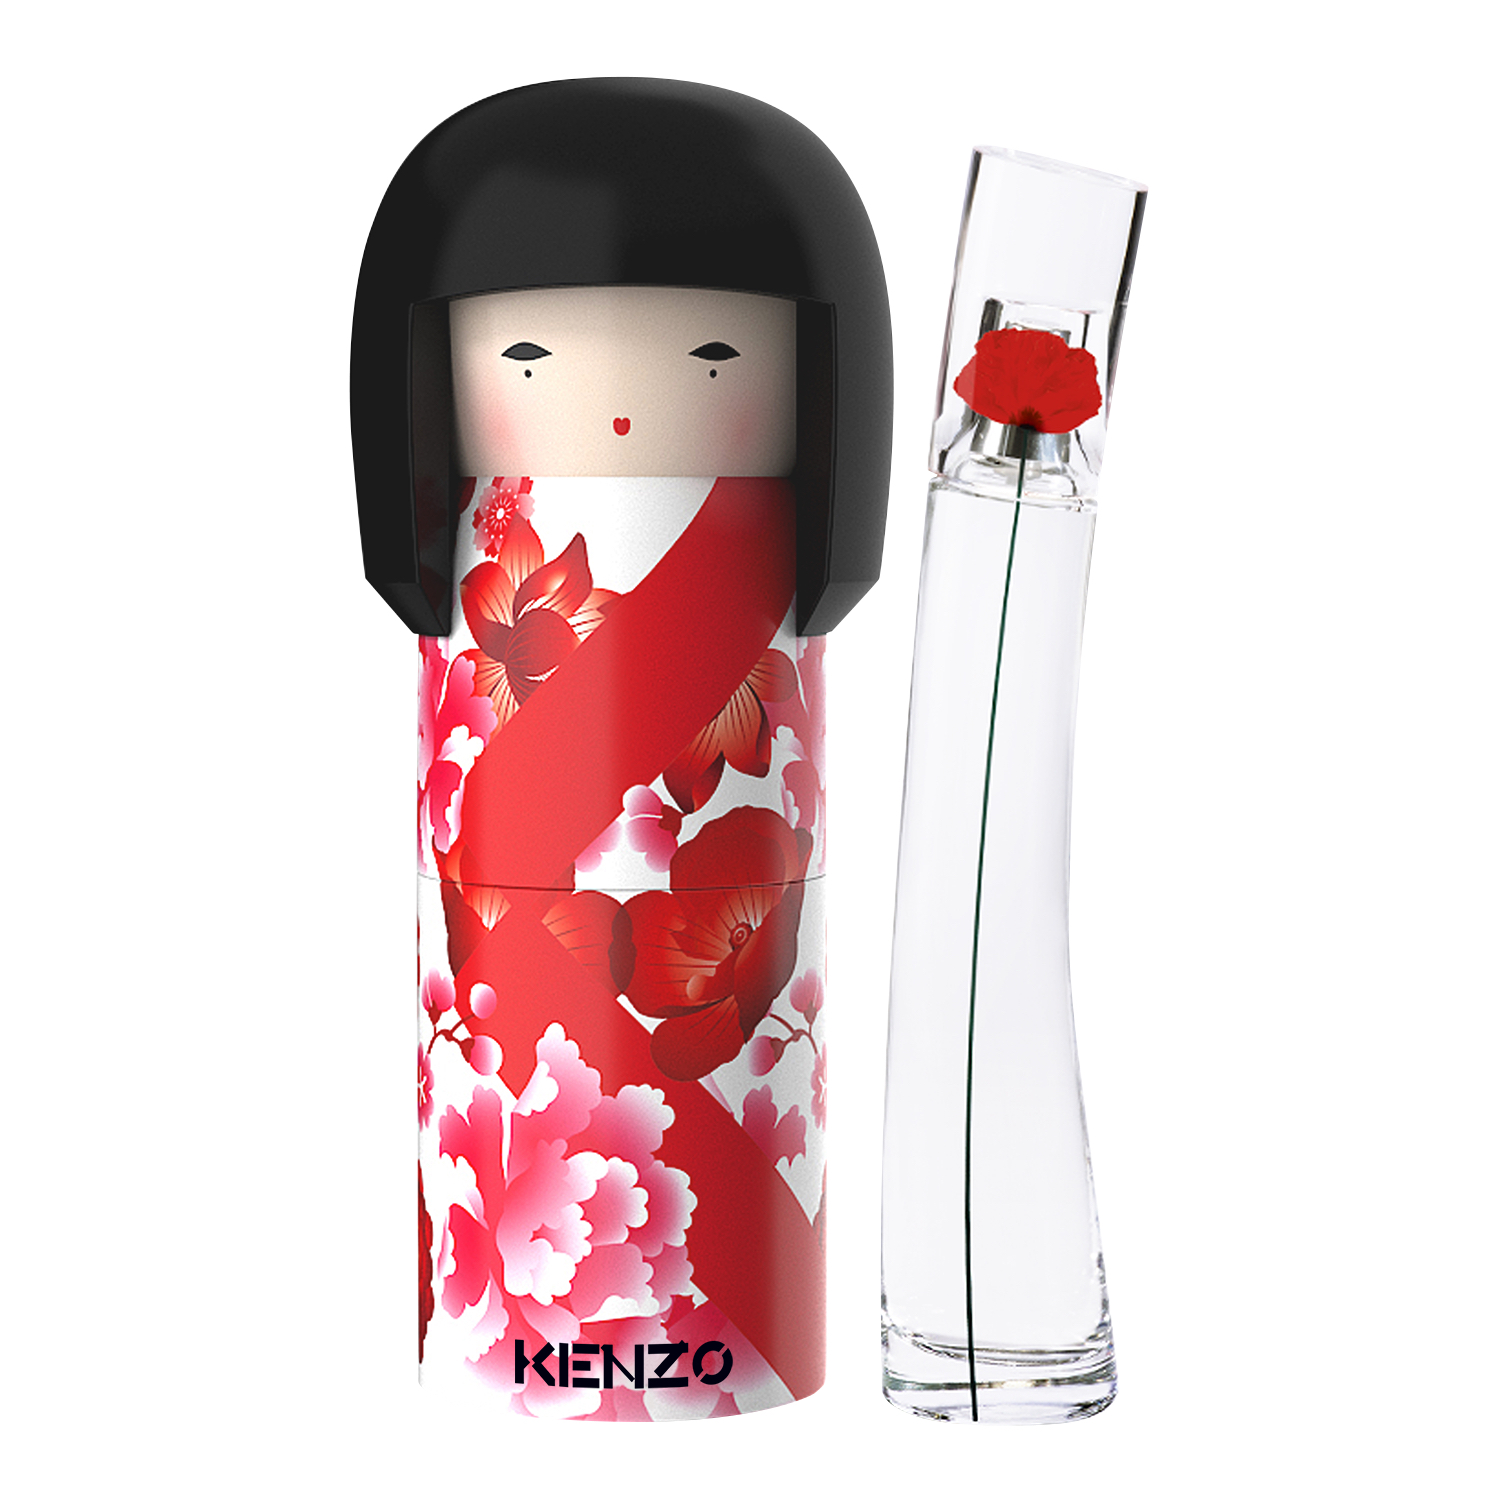 Conoce la nueva muñeca Kokeshi de Kenzo, una pieza repleta de cultura, tradición y un increíble olor